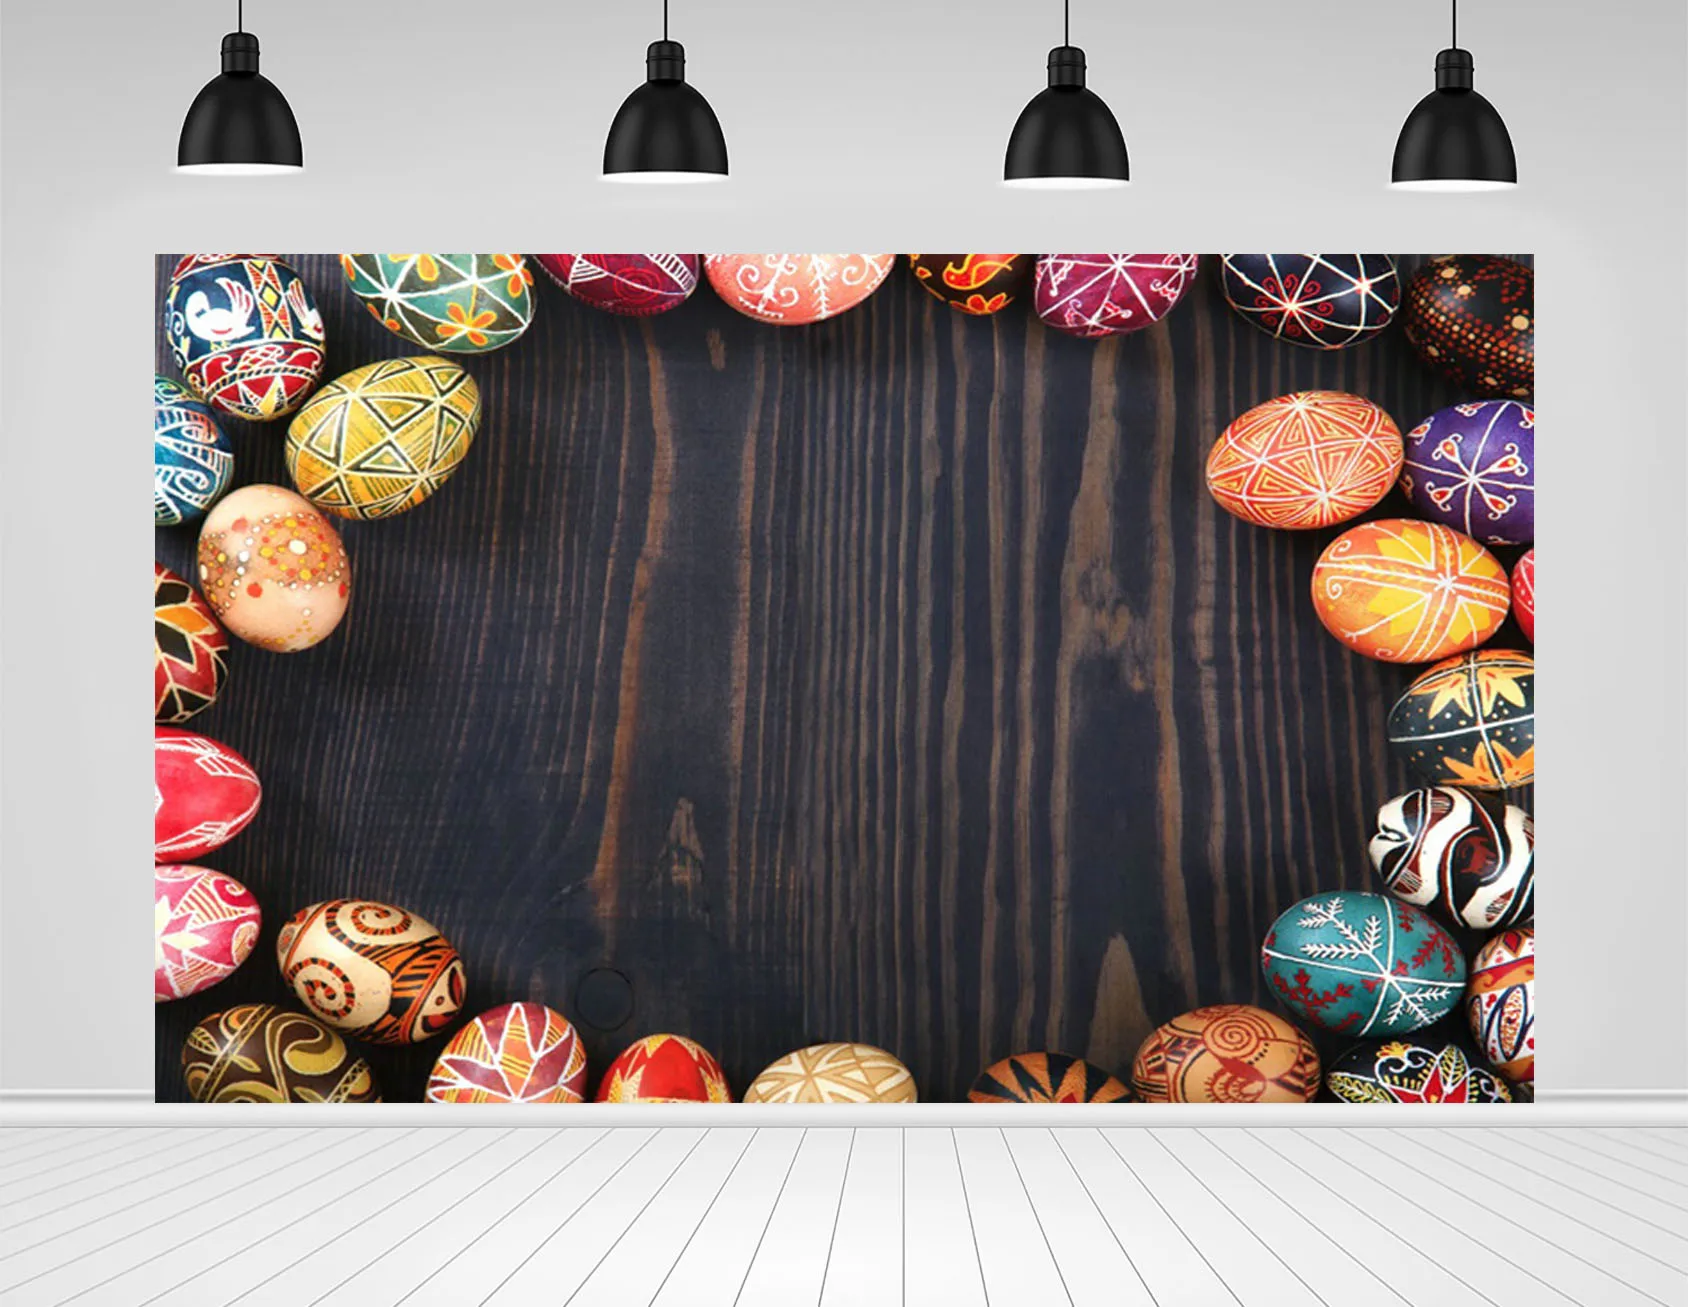 Scopiso пасхальные темно-коричневый фон с изображением деревянных доскок и  Цвет фон с яйцами вечерние Декор фотографии Фоны для студийного  фотографирования детей | AliExpress